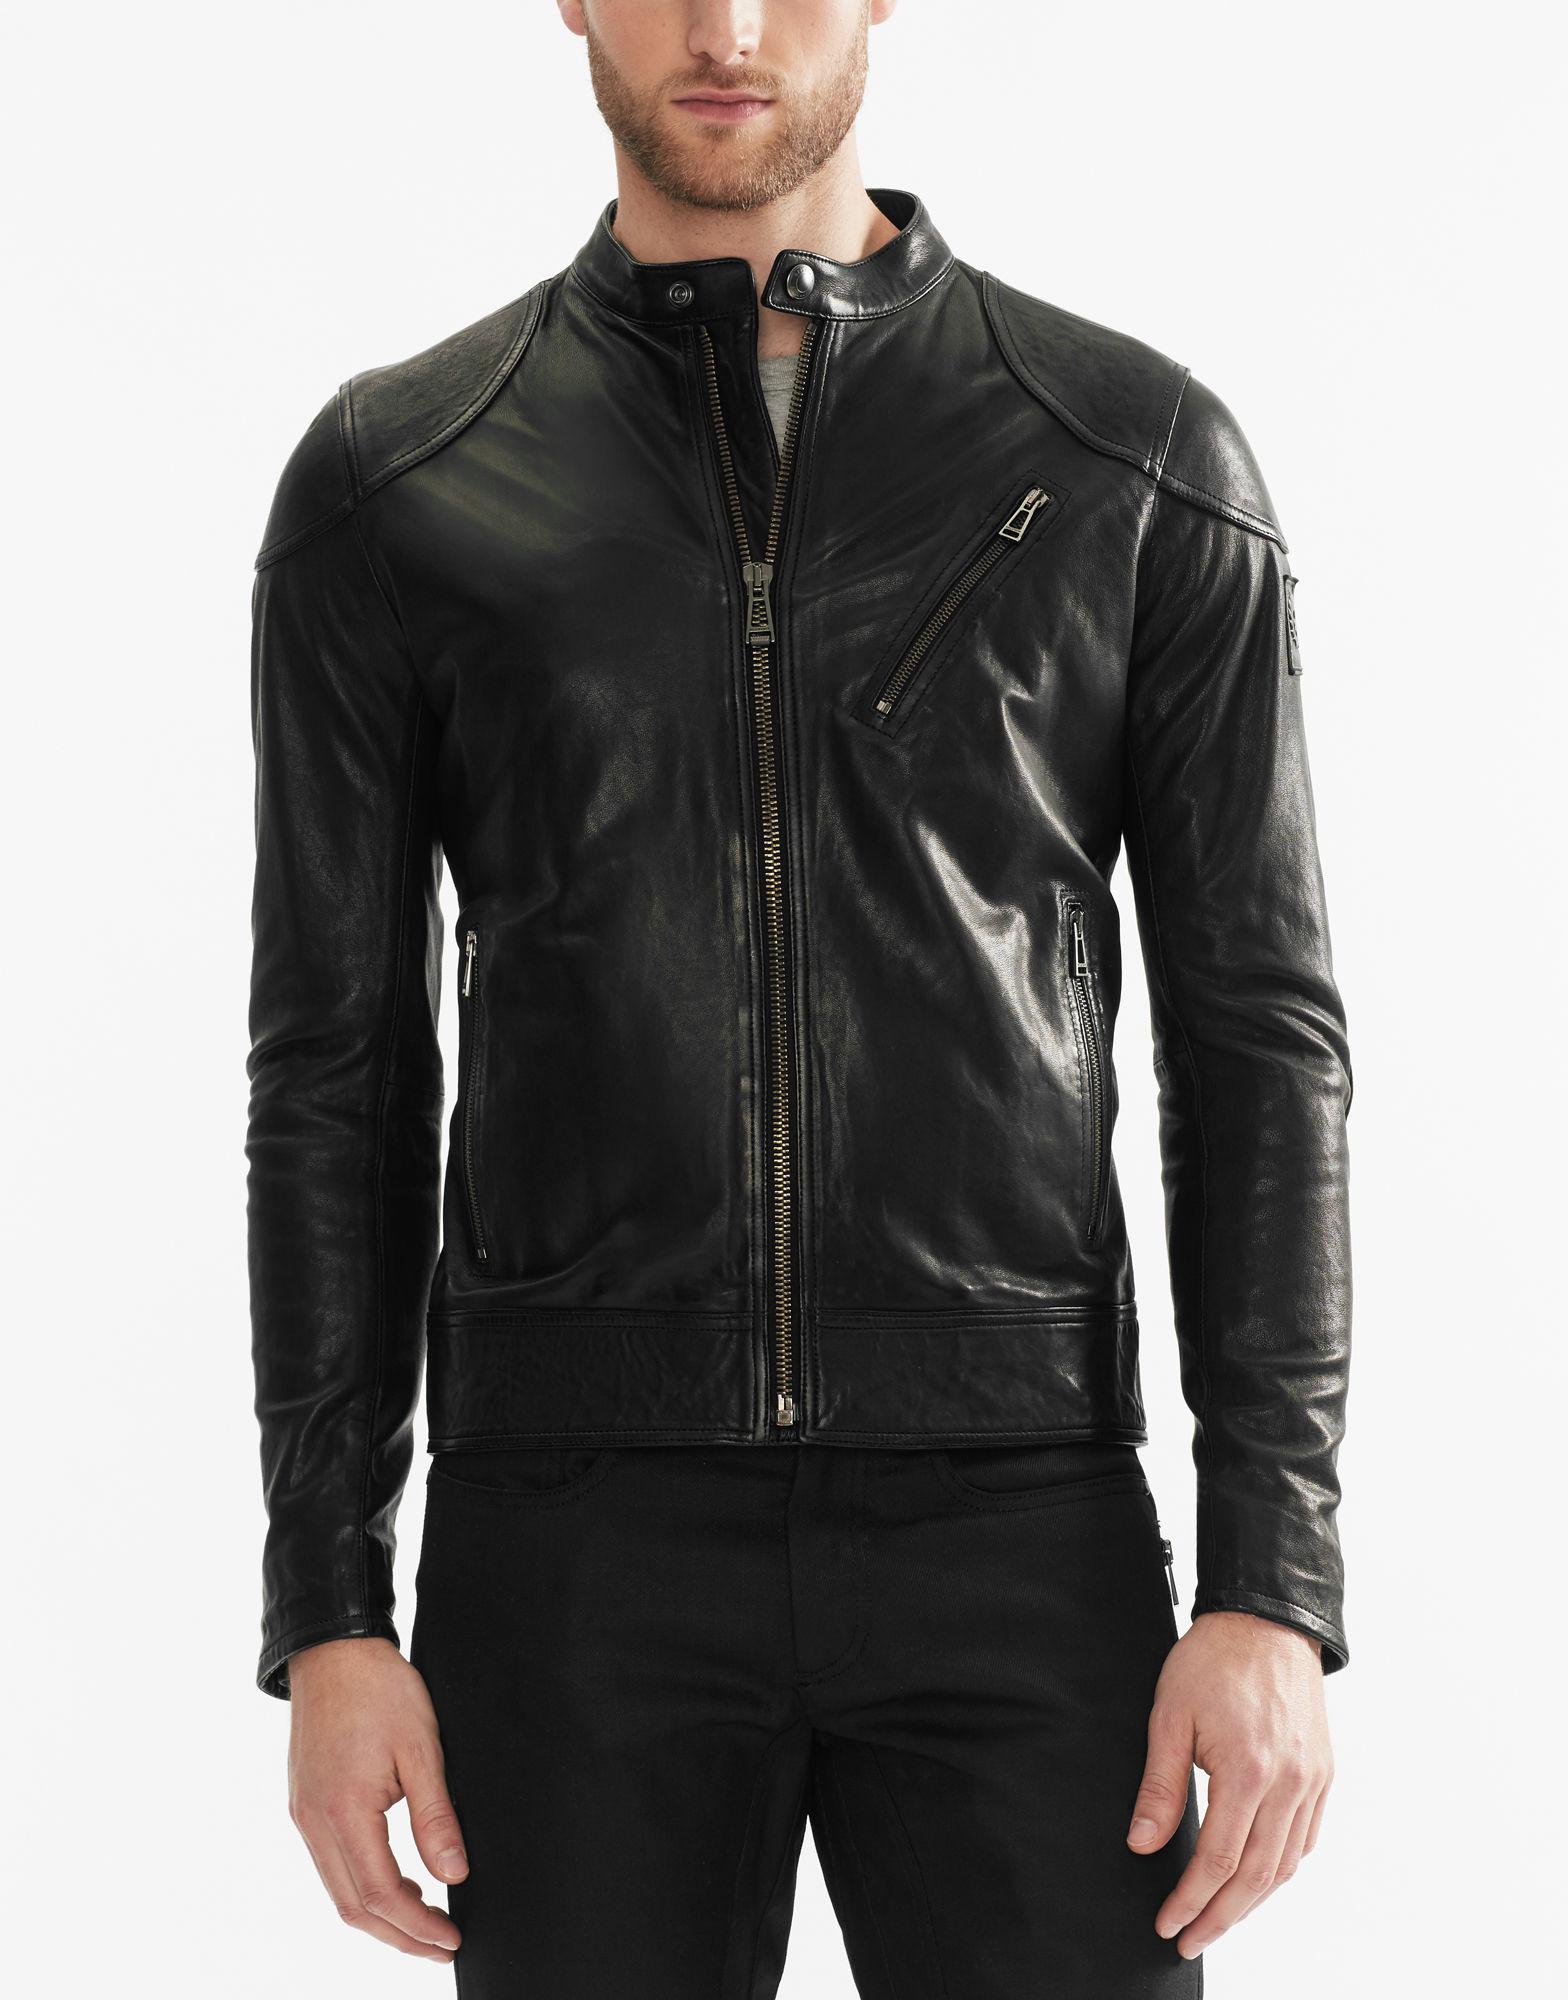 Belstaff Leather Maxford Blouson Jacket in Black for Men - Lyst